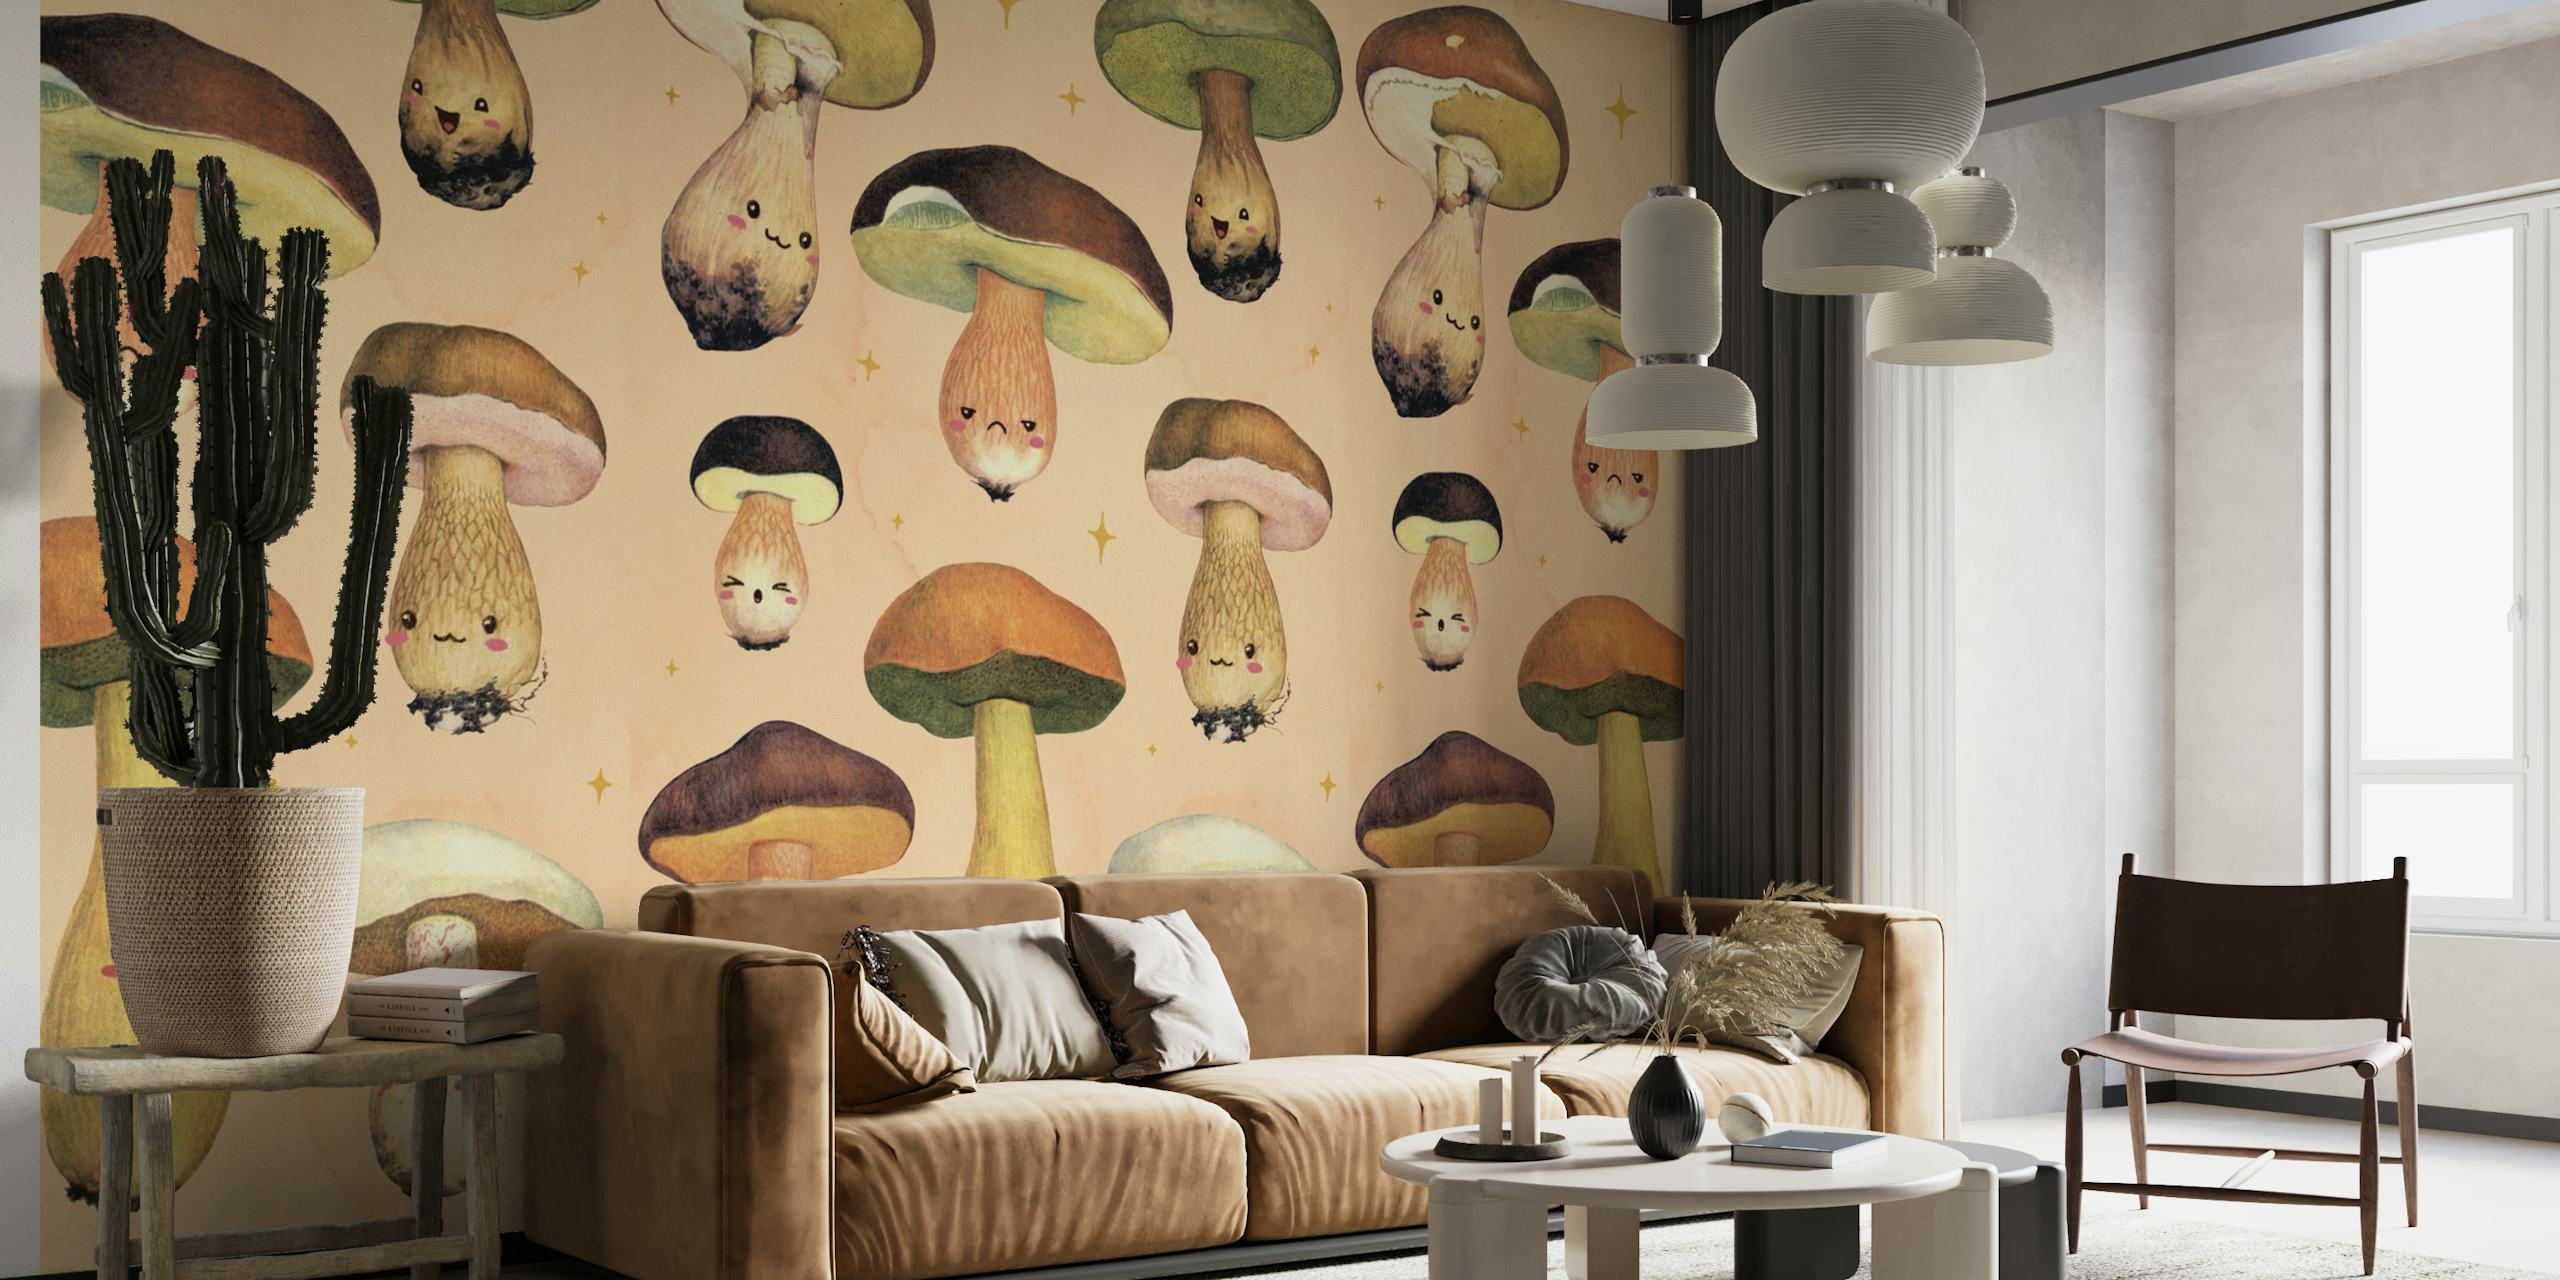 Kuvitettu Happy Forest Mushroom -seinämaalaus, jossa on omituisia sienihahmoja lämpimällä taustalla